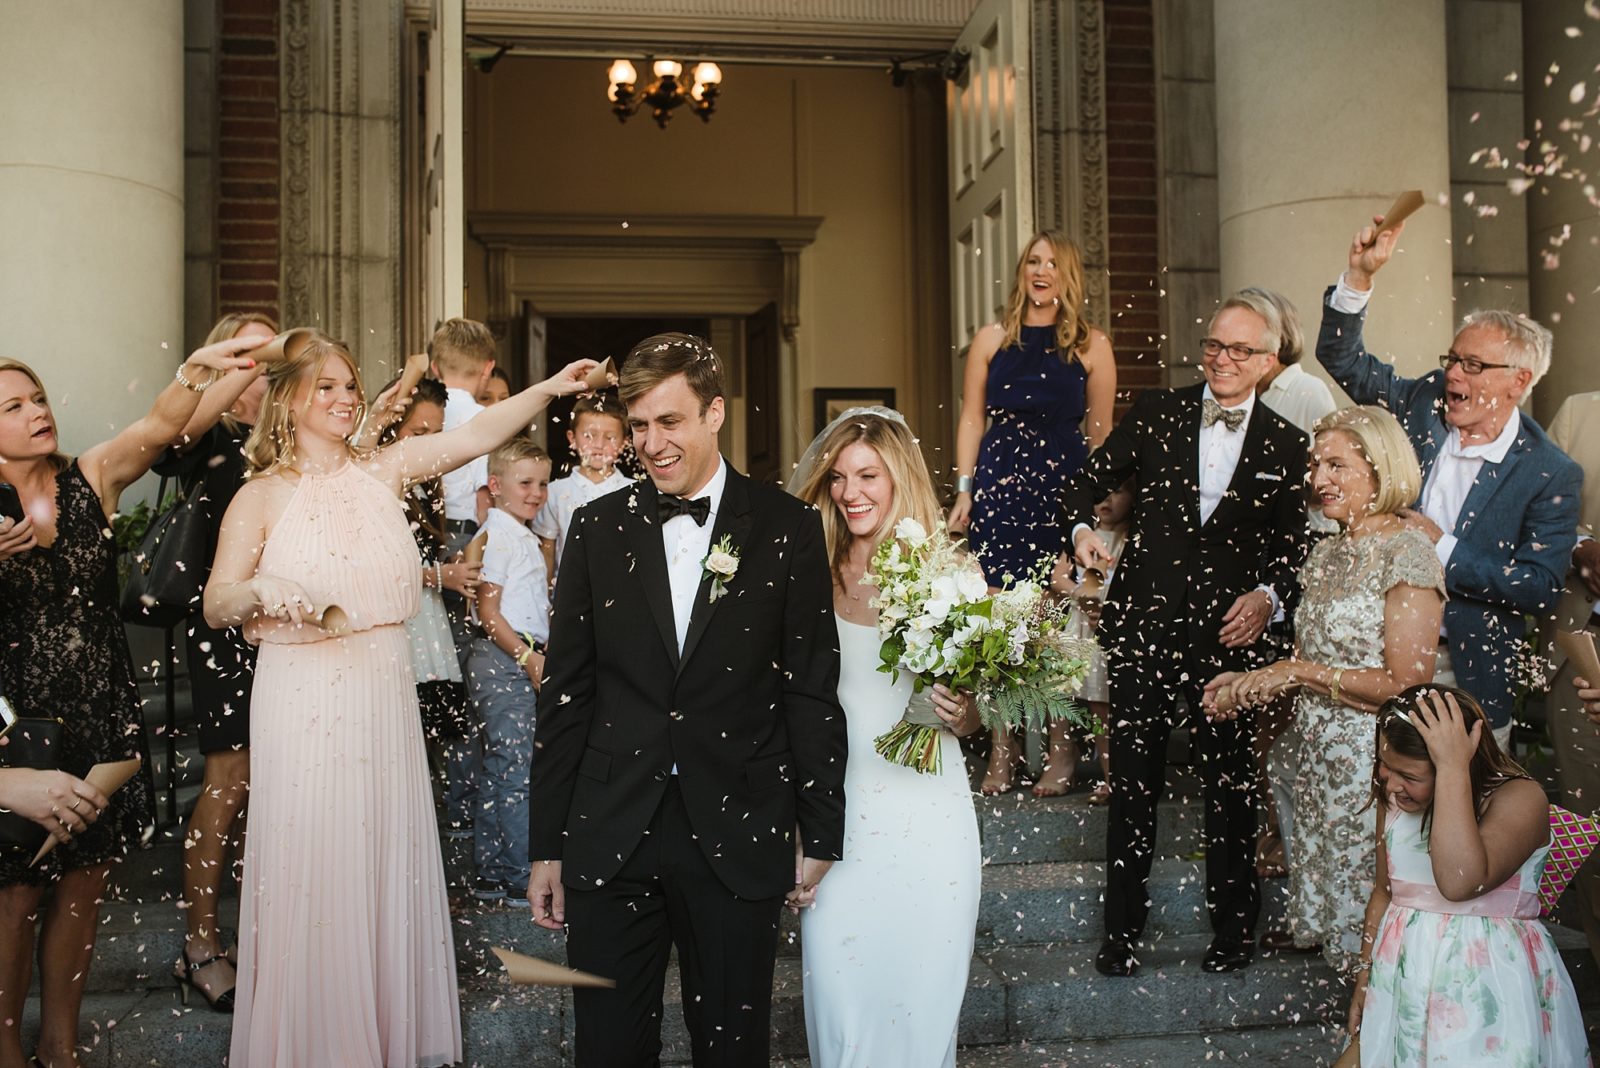 Fun confetti exit of a modern and stylish church wedding ceremony in downtown Portland, Oregon.